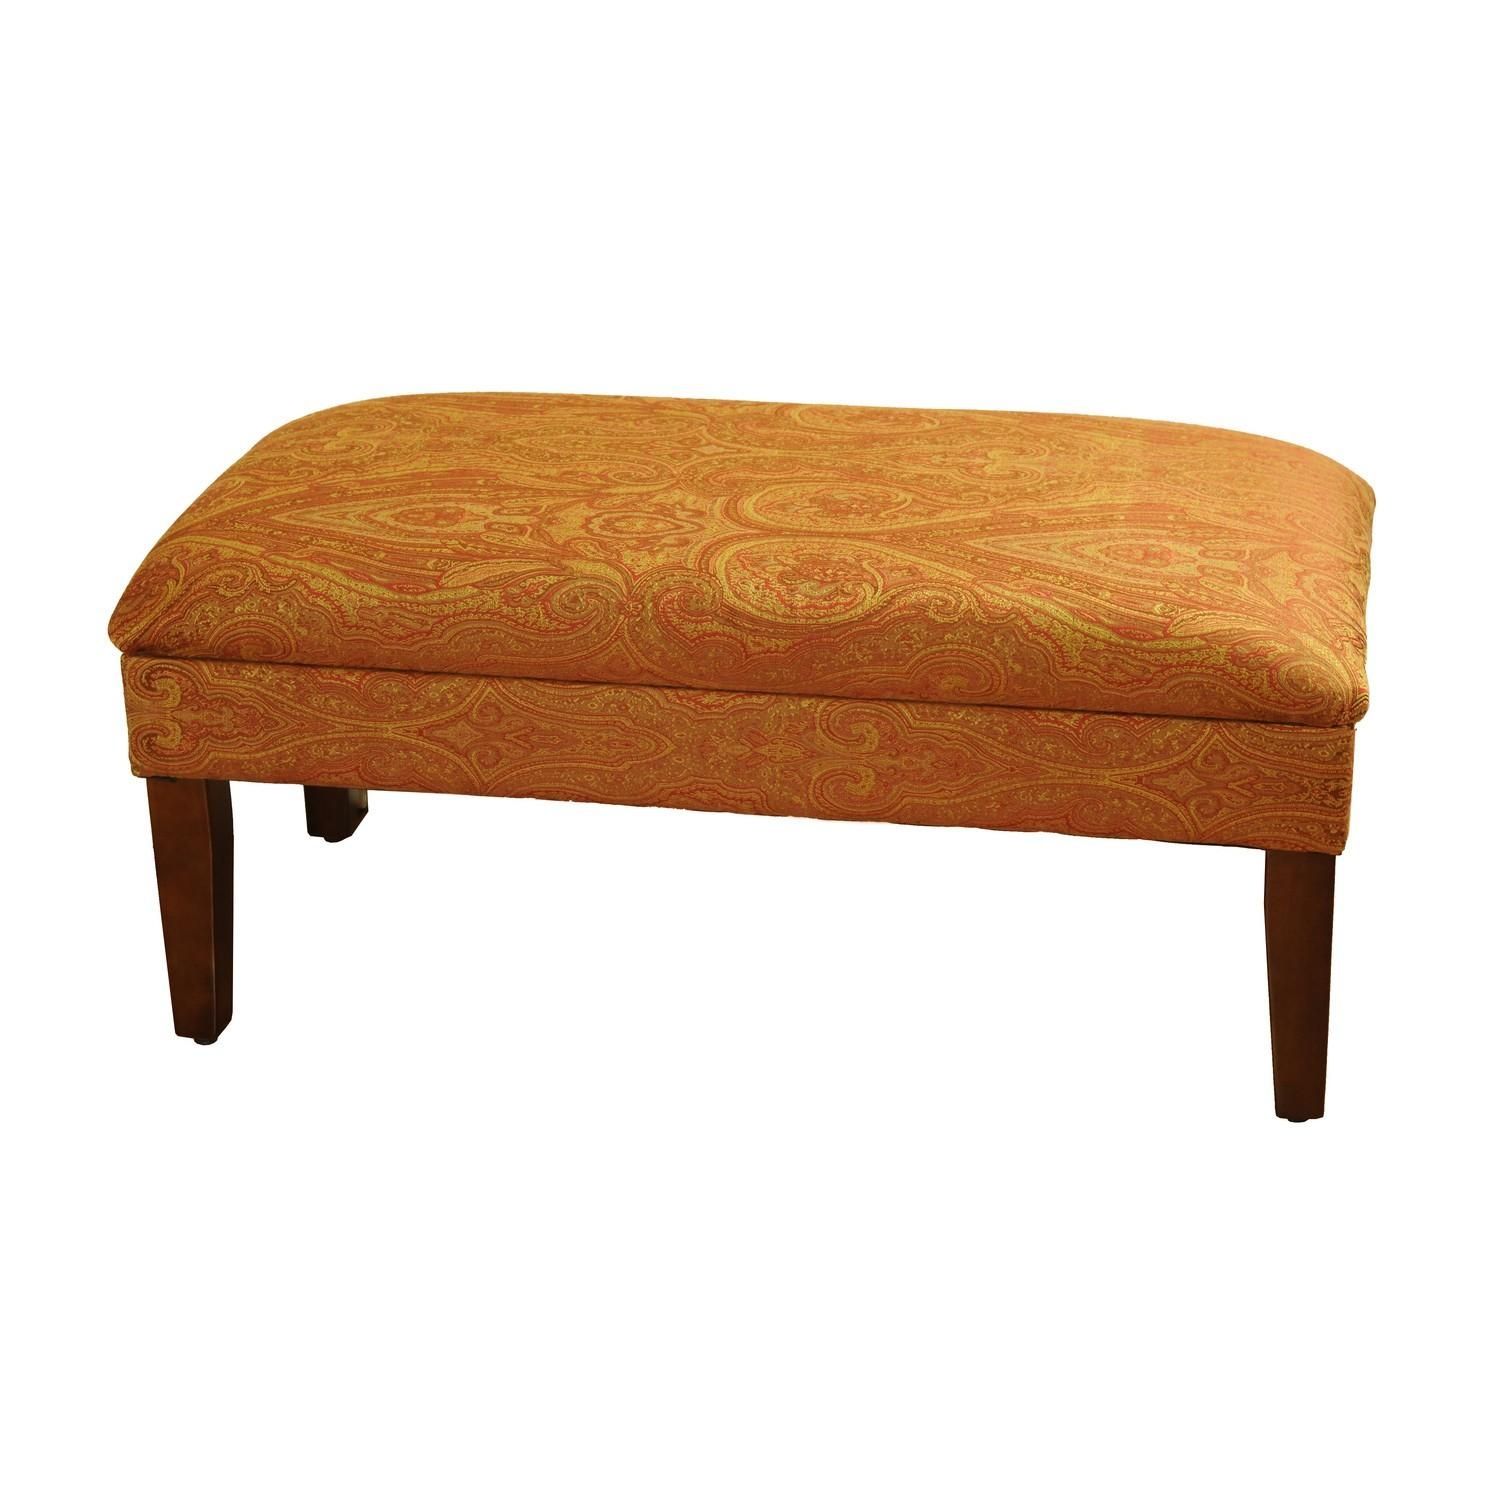 Bedroom : Furniture Bedroom Simple Orange Suede Upholstsredn Bench With Bedroom Bench Sofas (View 17 of 20)